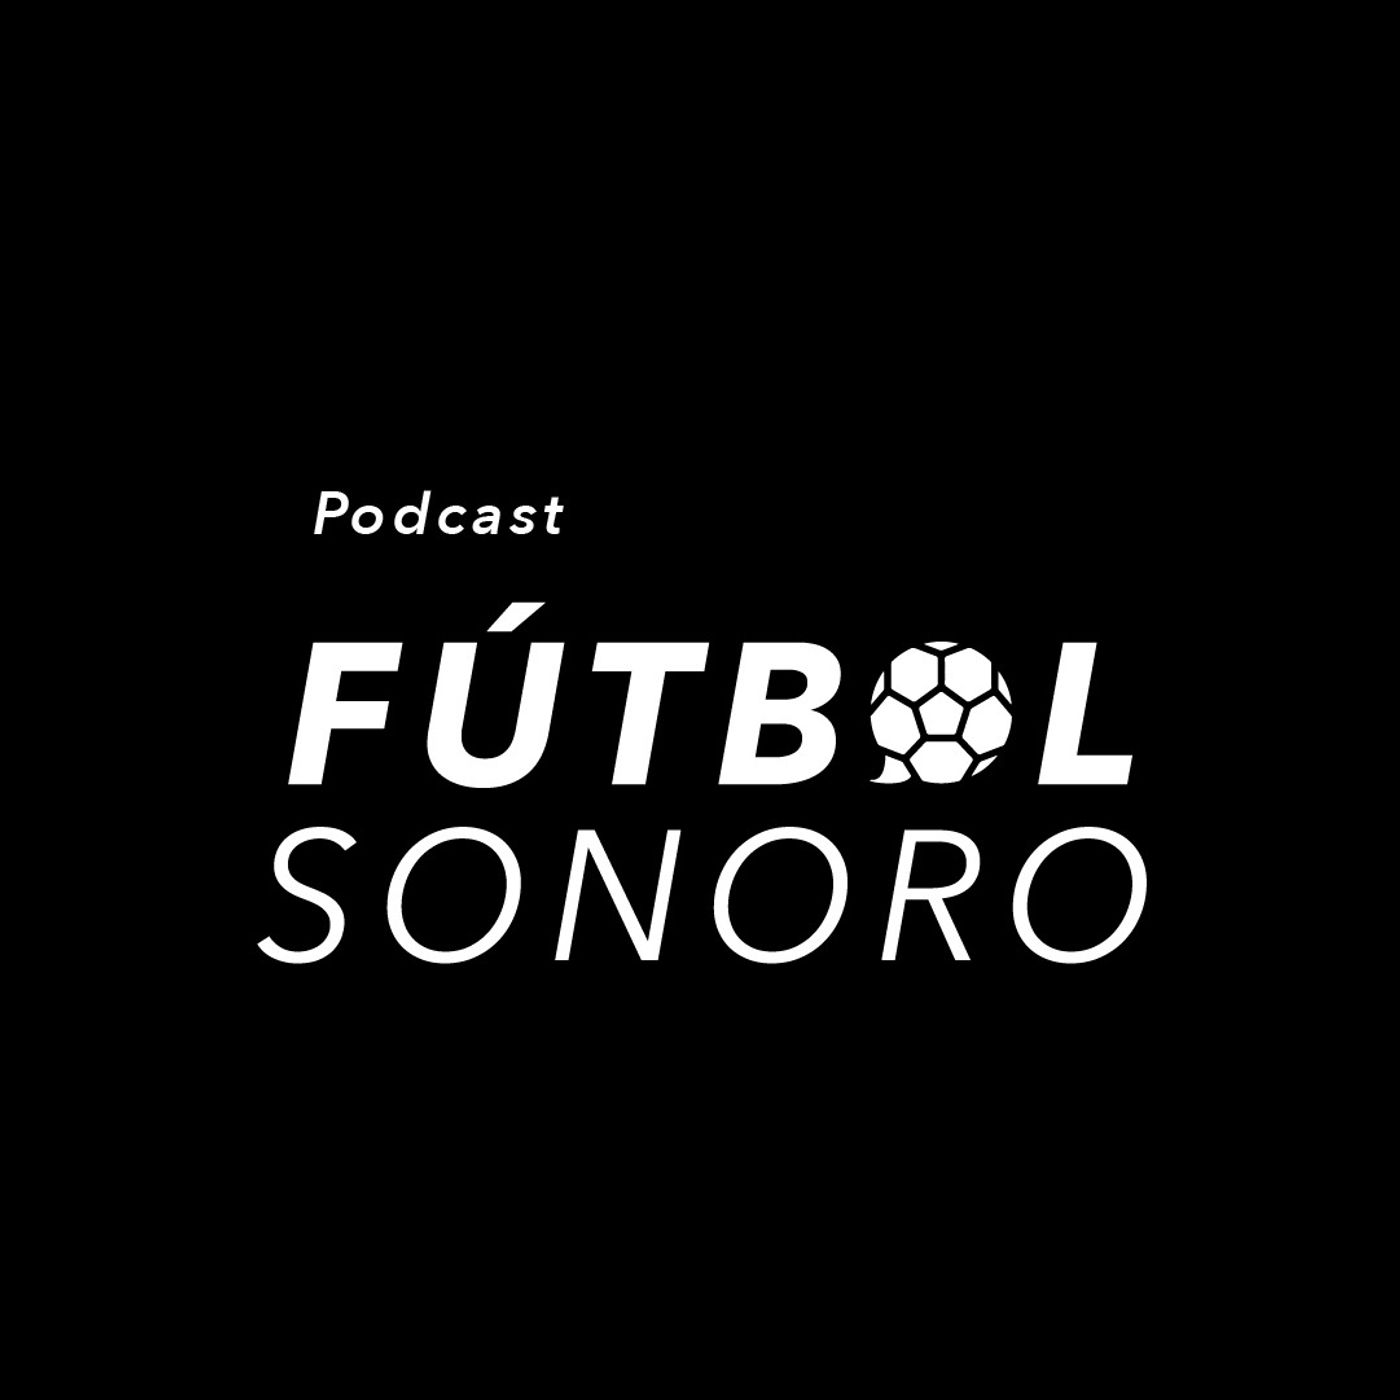 Fútbol Sonoro